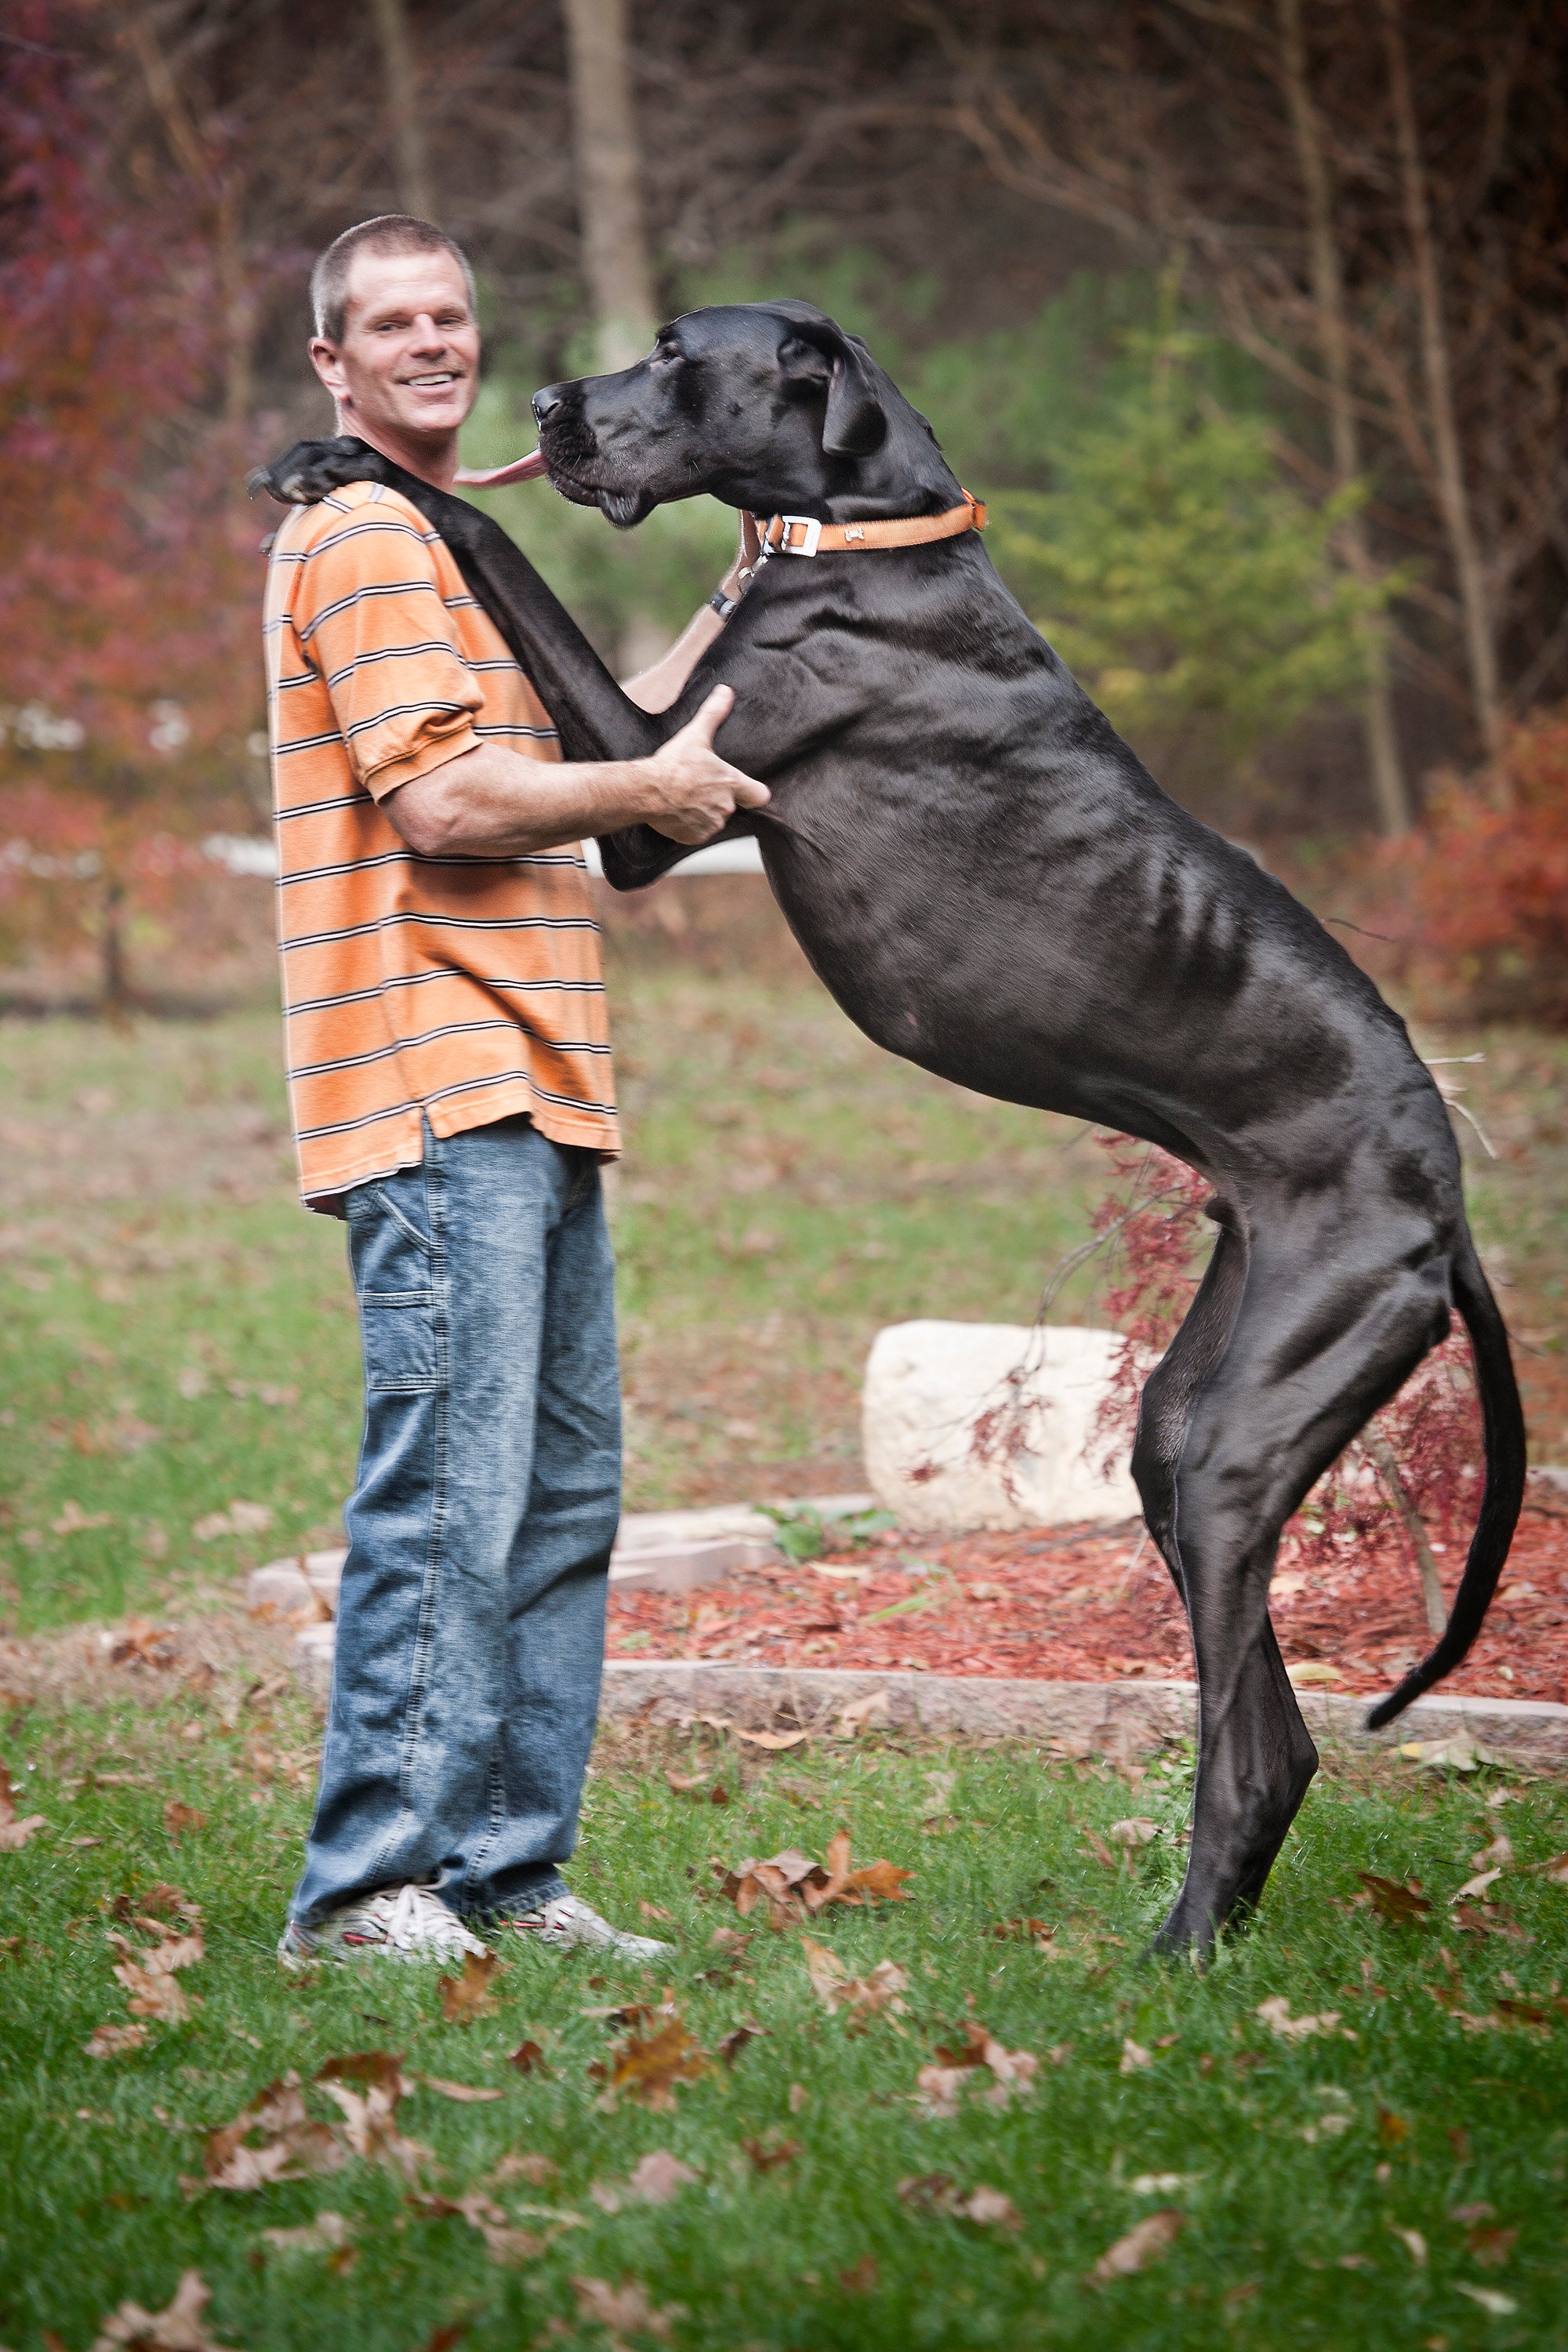 Duitse dog Zeus is de hoogste hond ter wereld